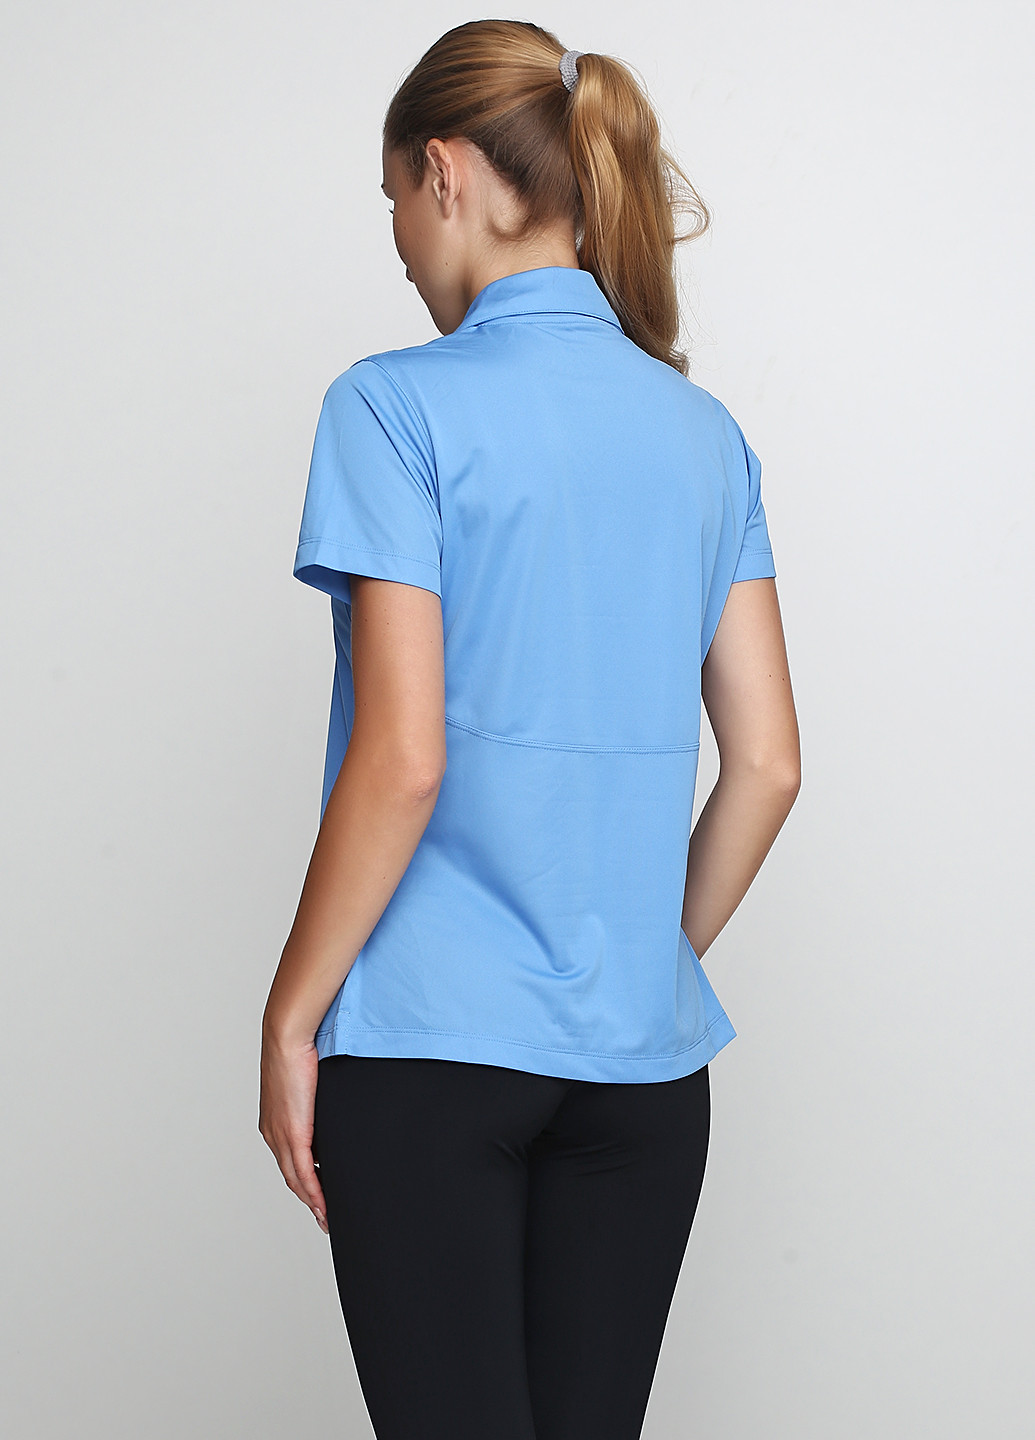 Голубой женская футболка-поло SPORT TEK однотонная